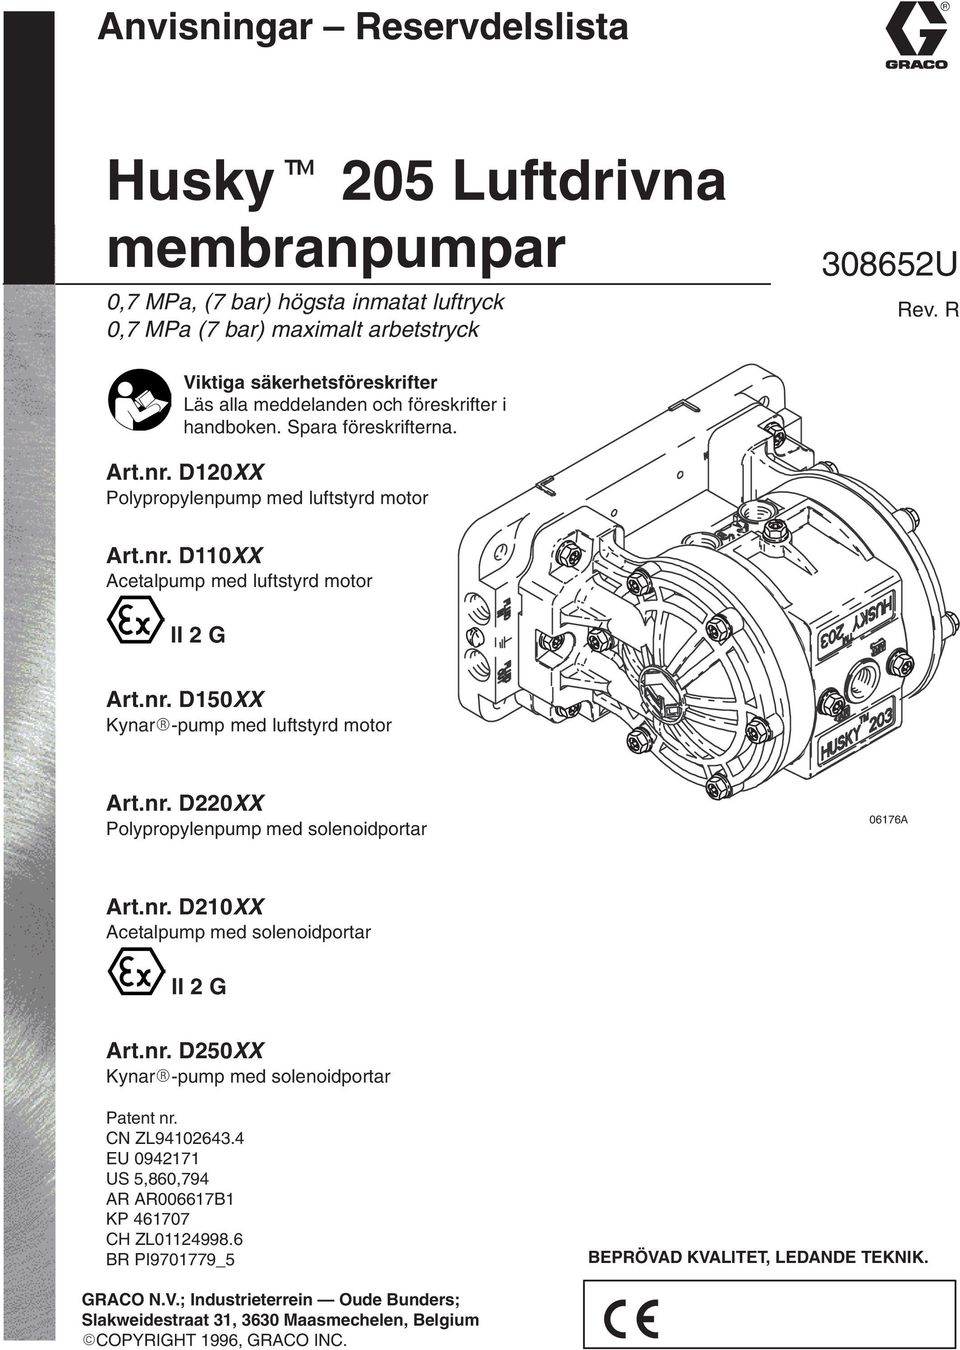 nr. D50XX Kynar-pump med luftstyrd motor Art.nr. D220XX Polypropylenpump med solenoidportar 0676A Art.nr. D20XX Acetalpump med solenoidportar II 2 G Art.nr. D250XX Kynar-pump med solenoidportar Patent nr.